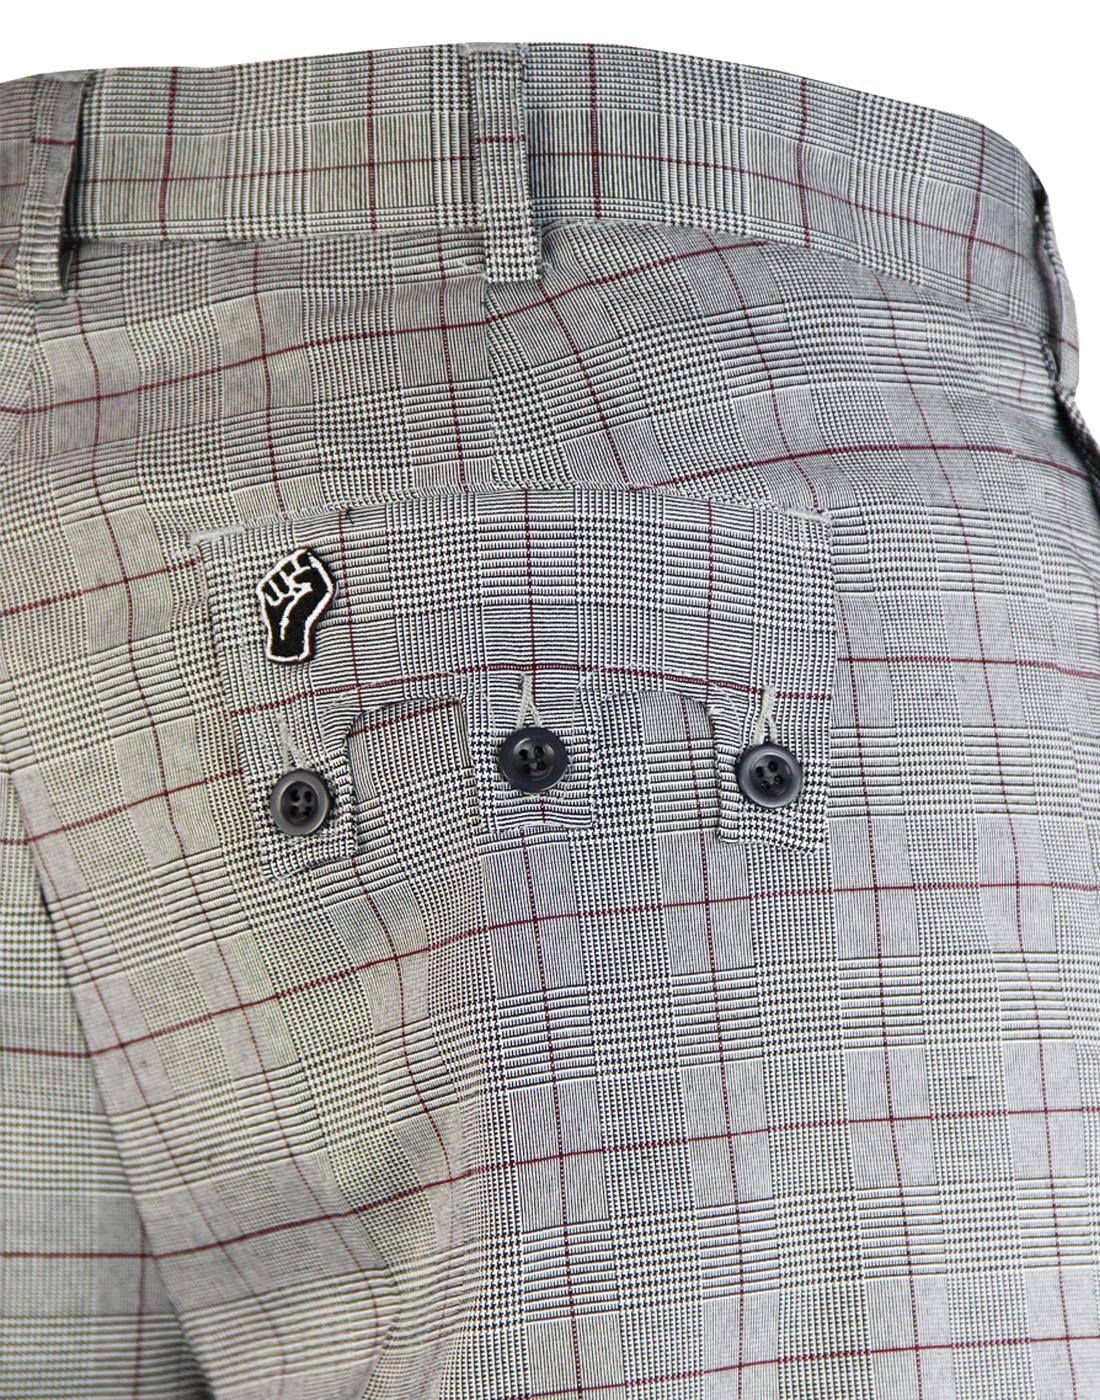 1970s Men's Ties in Various Widths Wide Ties Butterick Sewing Pattern 6351  Vintage Men's Sewing Patterns - Etsy | Mens sewing patterns, 1970s men,  Ties mens